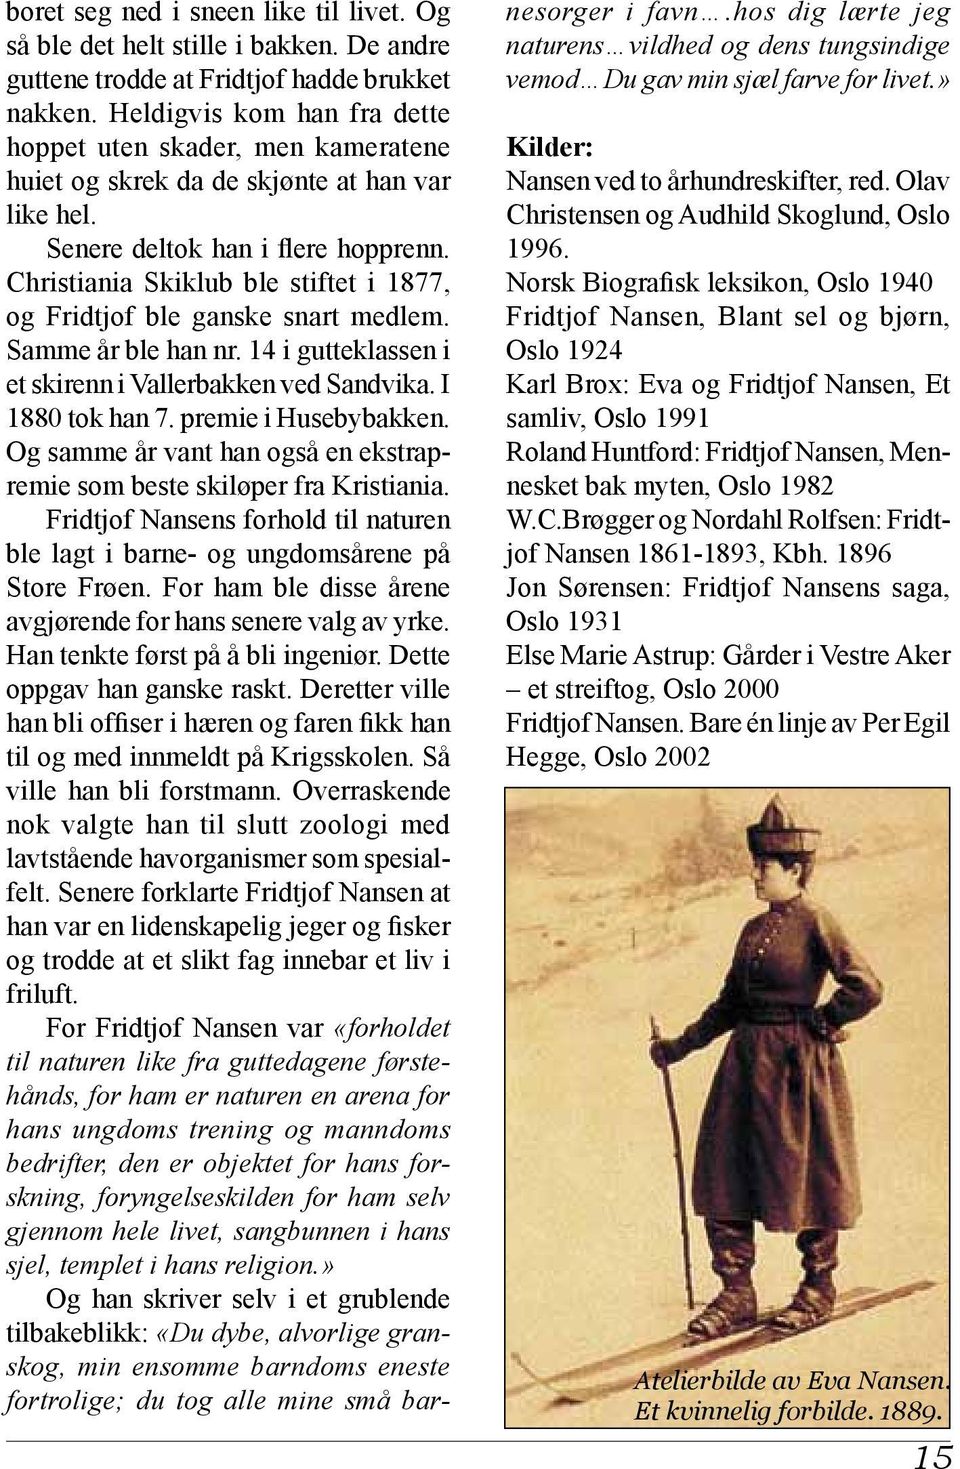 Christiania Skiklub ble stiftet i 1877, og Fridtjof ble ganske snart medlem. Samme år ble han nr. 14 i gutteklassen i et skirenn i Vallerbakken ved Sandvika. I 1880 tok han 7. premie i Husebybakken.